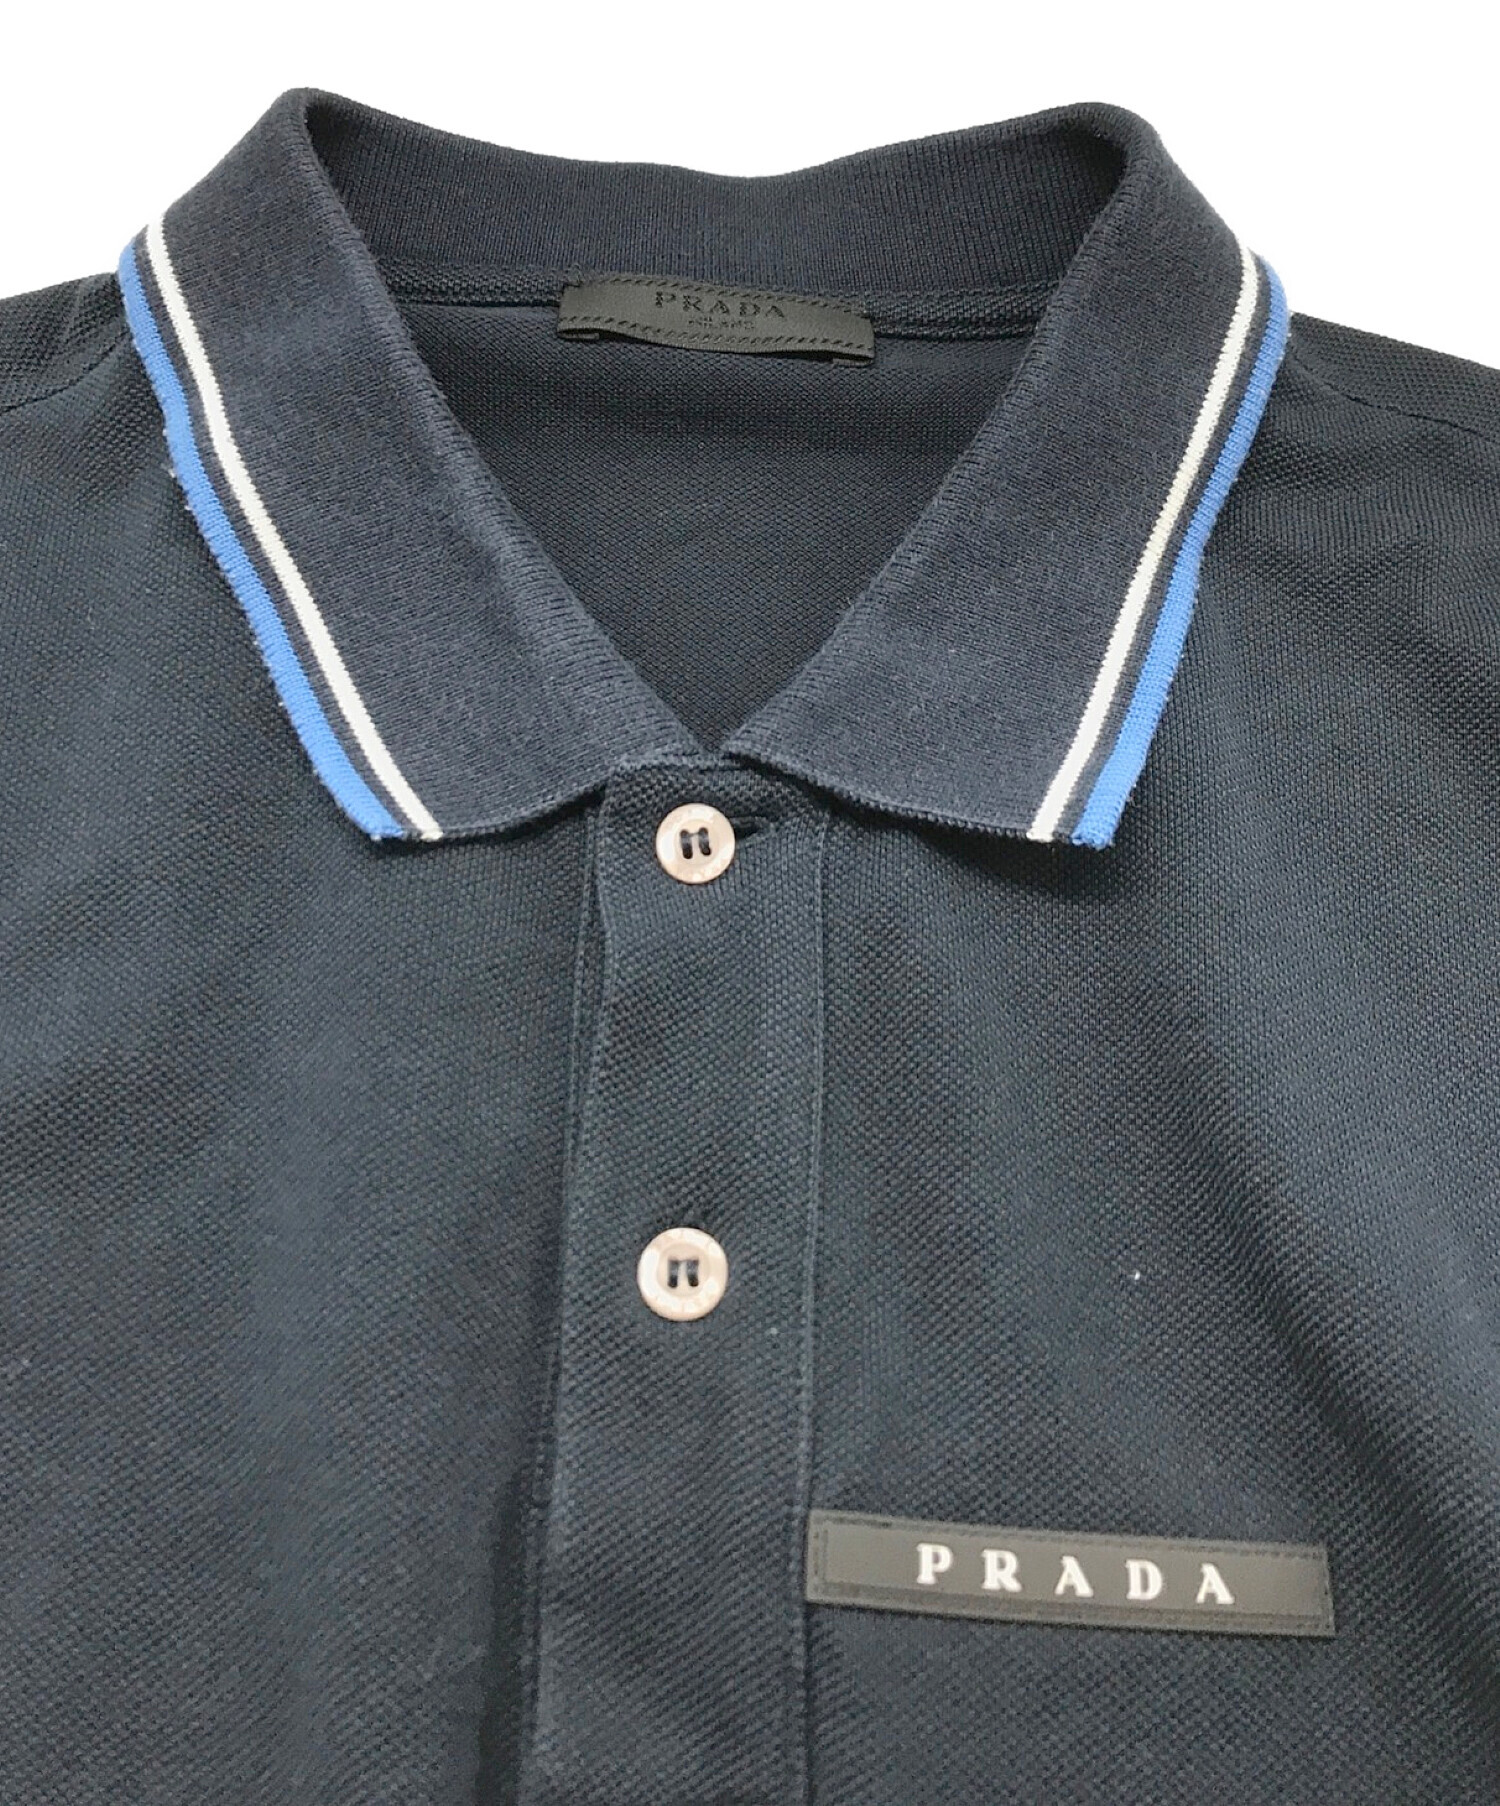 PRADA (プラダ) ワンポイントロゴポロシャツ ネイビー×ブルー サイズ:XL